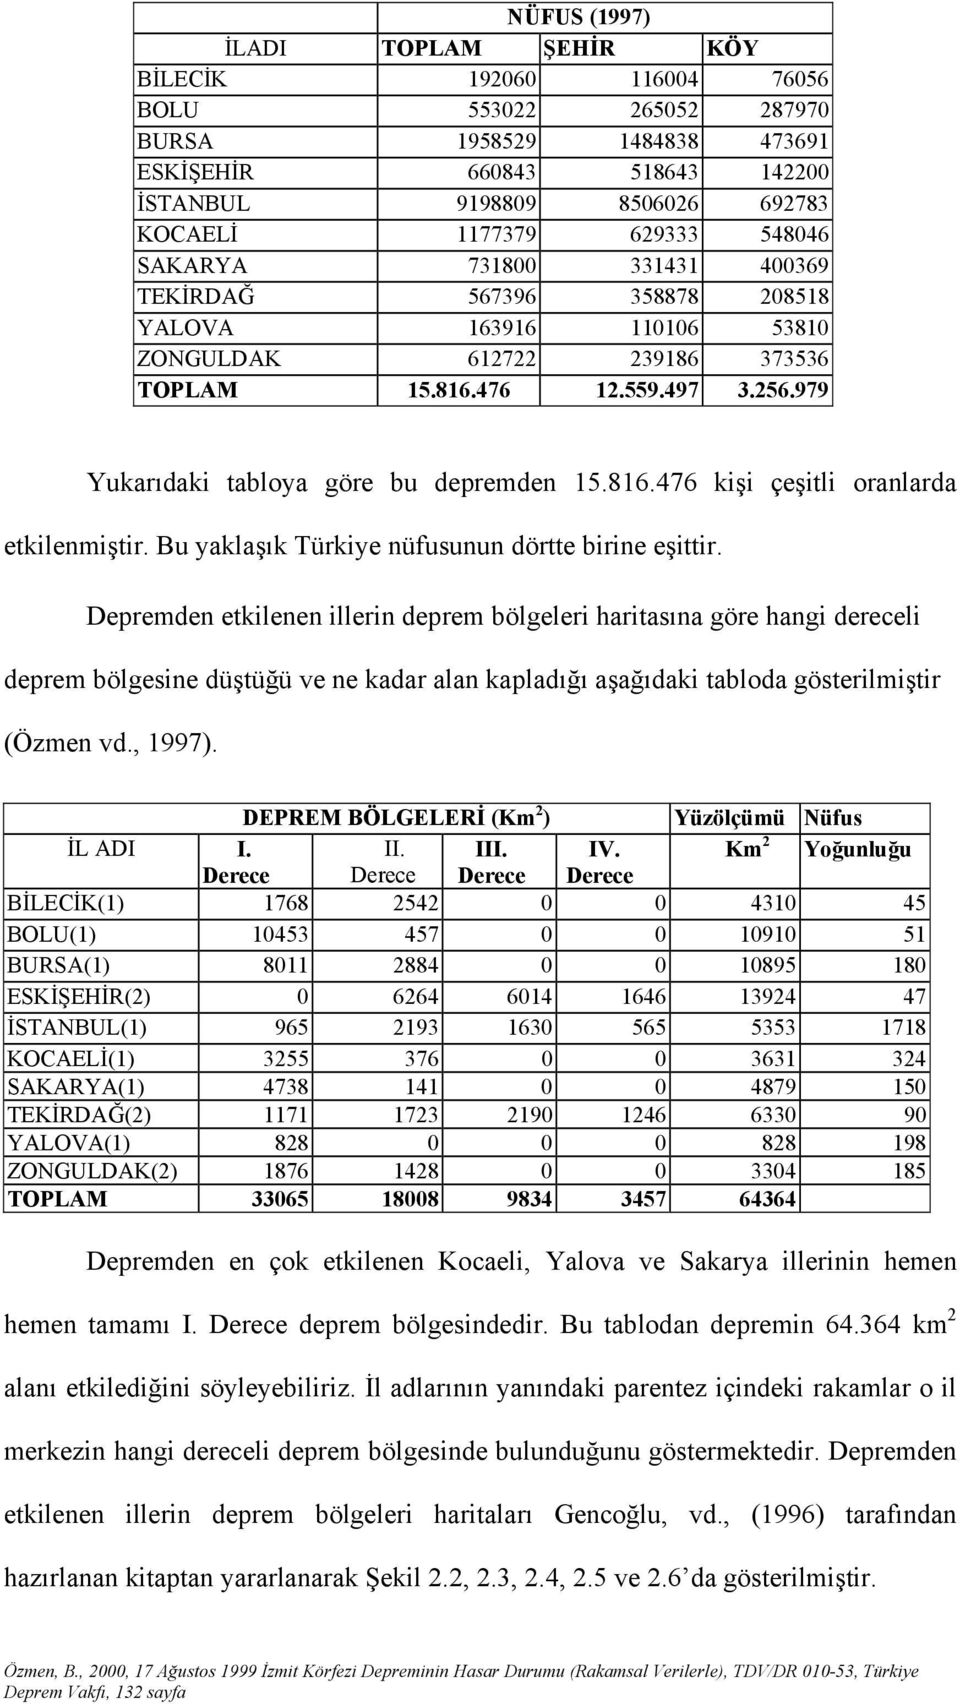 979 Yukarıdaki tabloya göre bu depremden 15.816.476 kişi çeşitli oranlarda etkilenmiştir. Bu yaklaşık Türkiye nüfusunun dörtte birine eşittir.